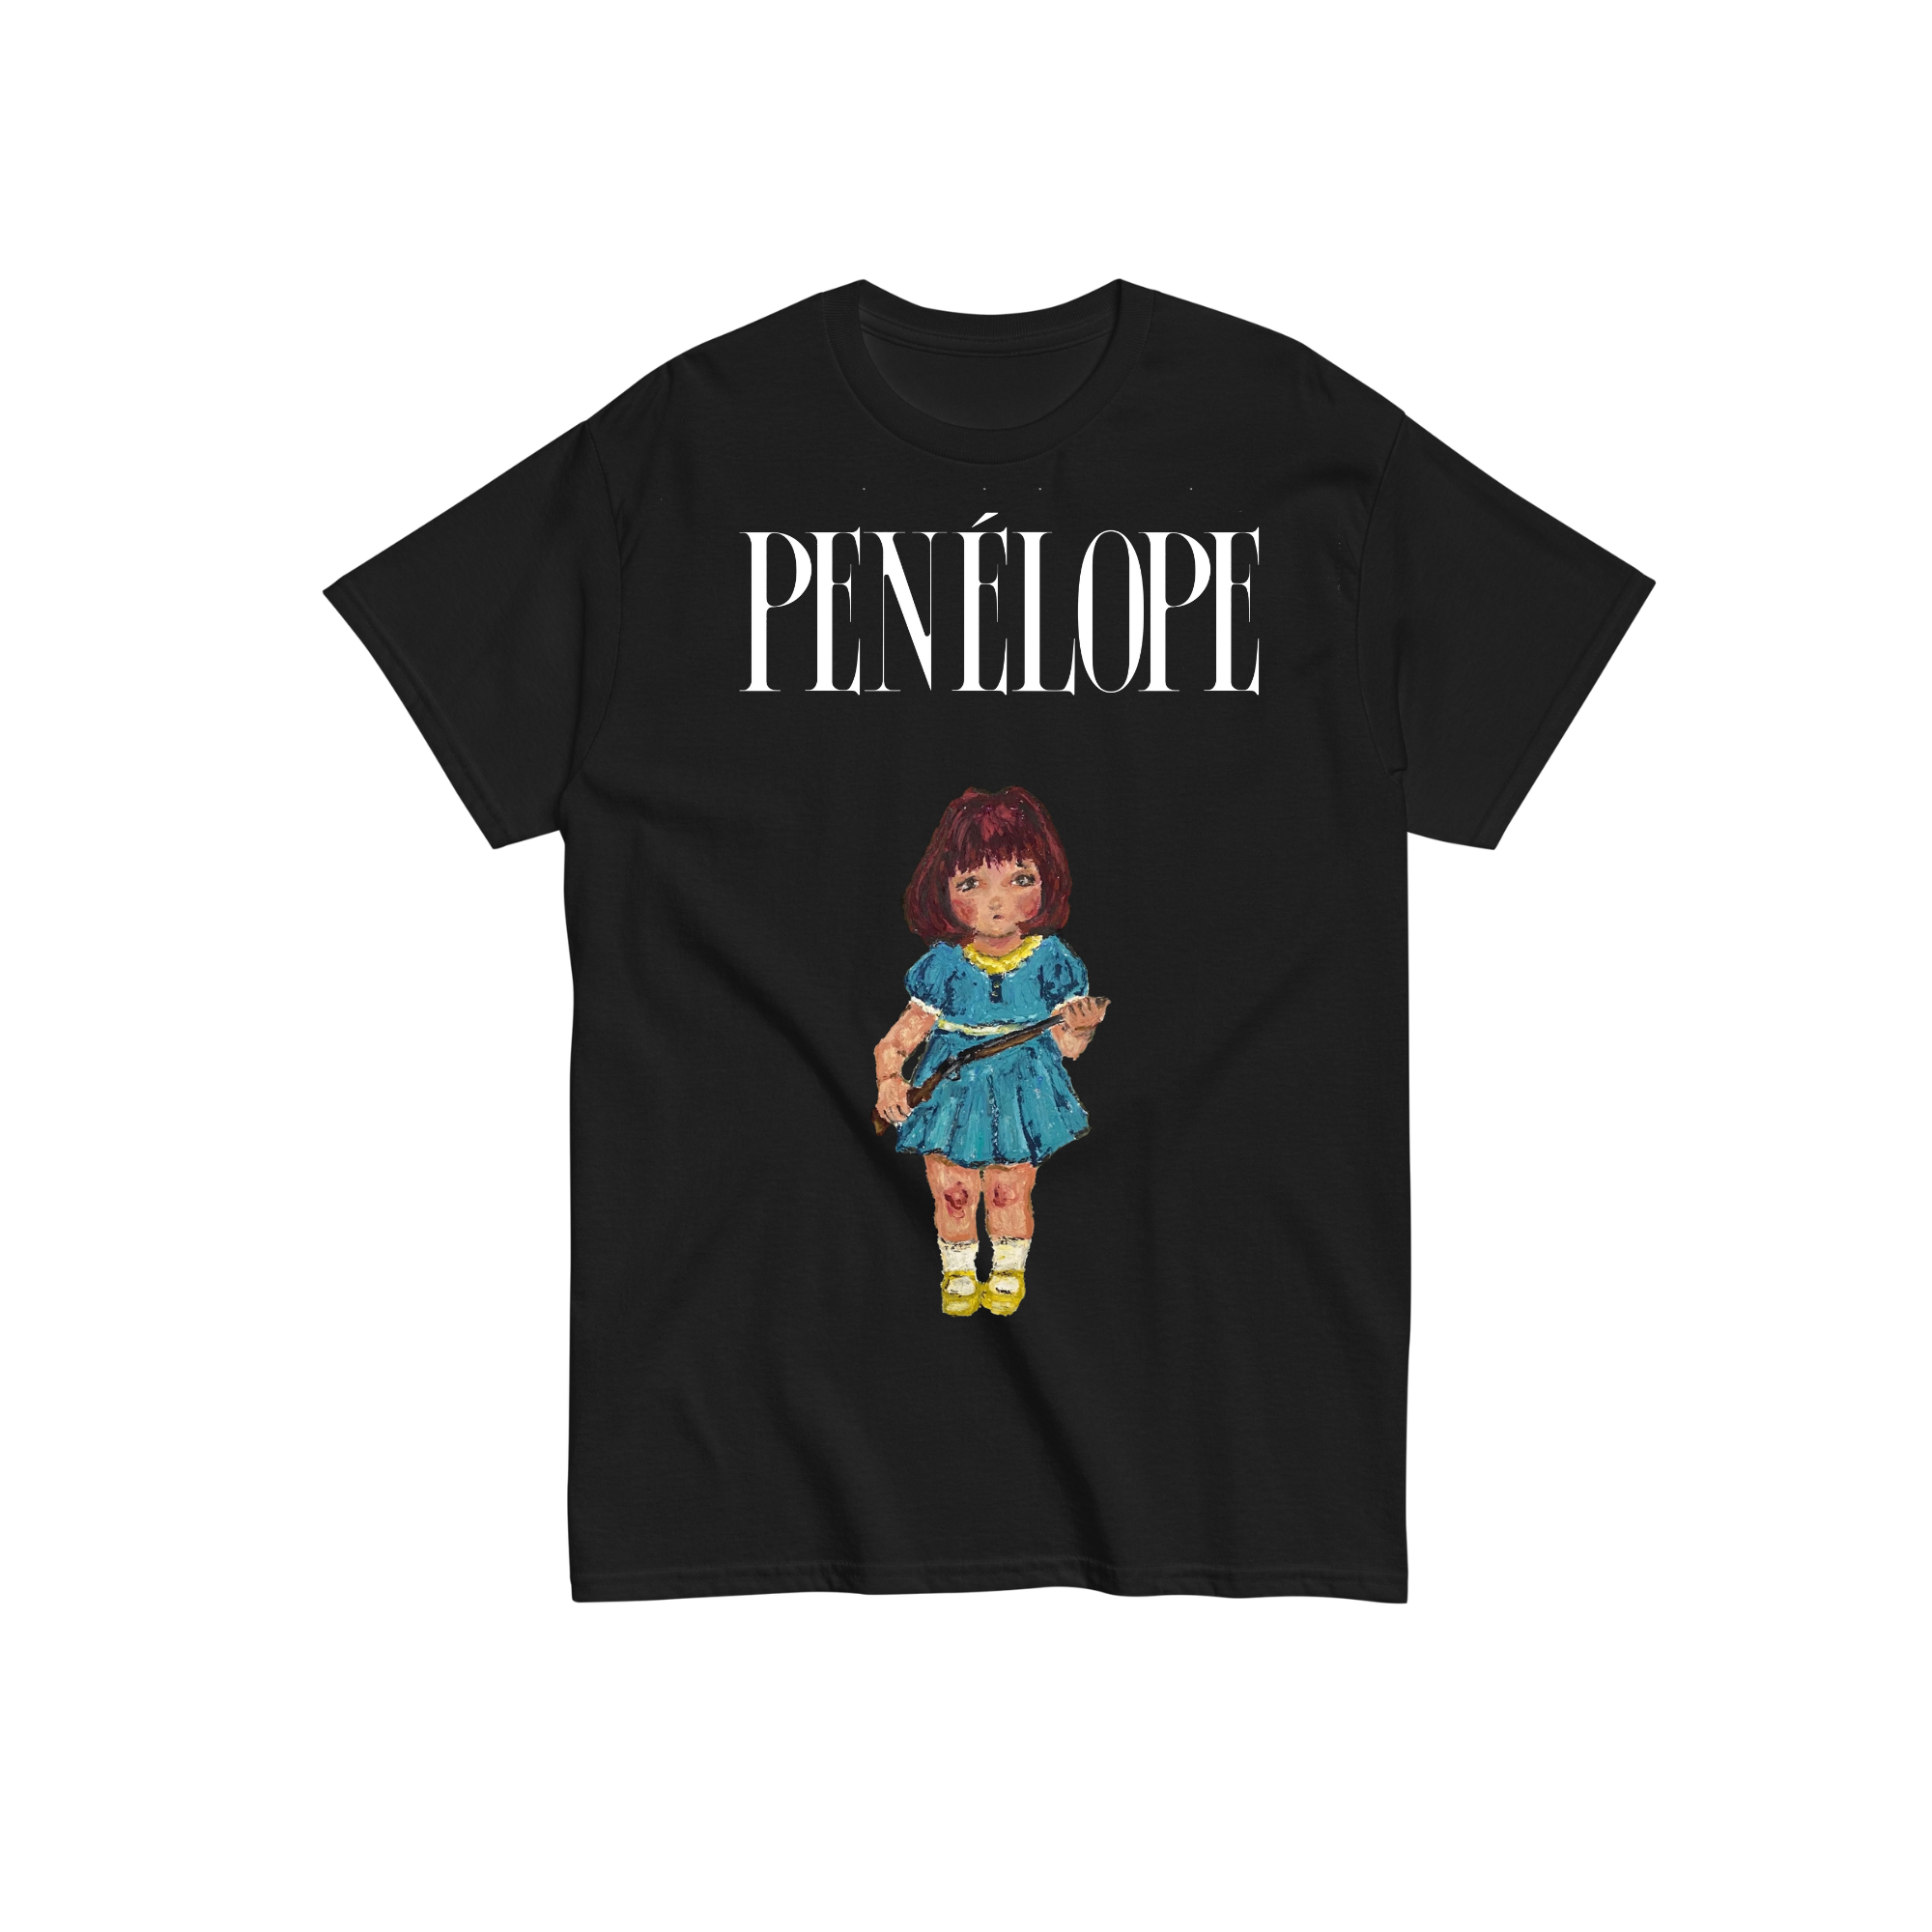 Penélope - Camiseta Paciente Cero